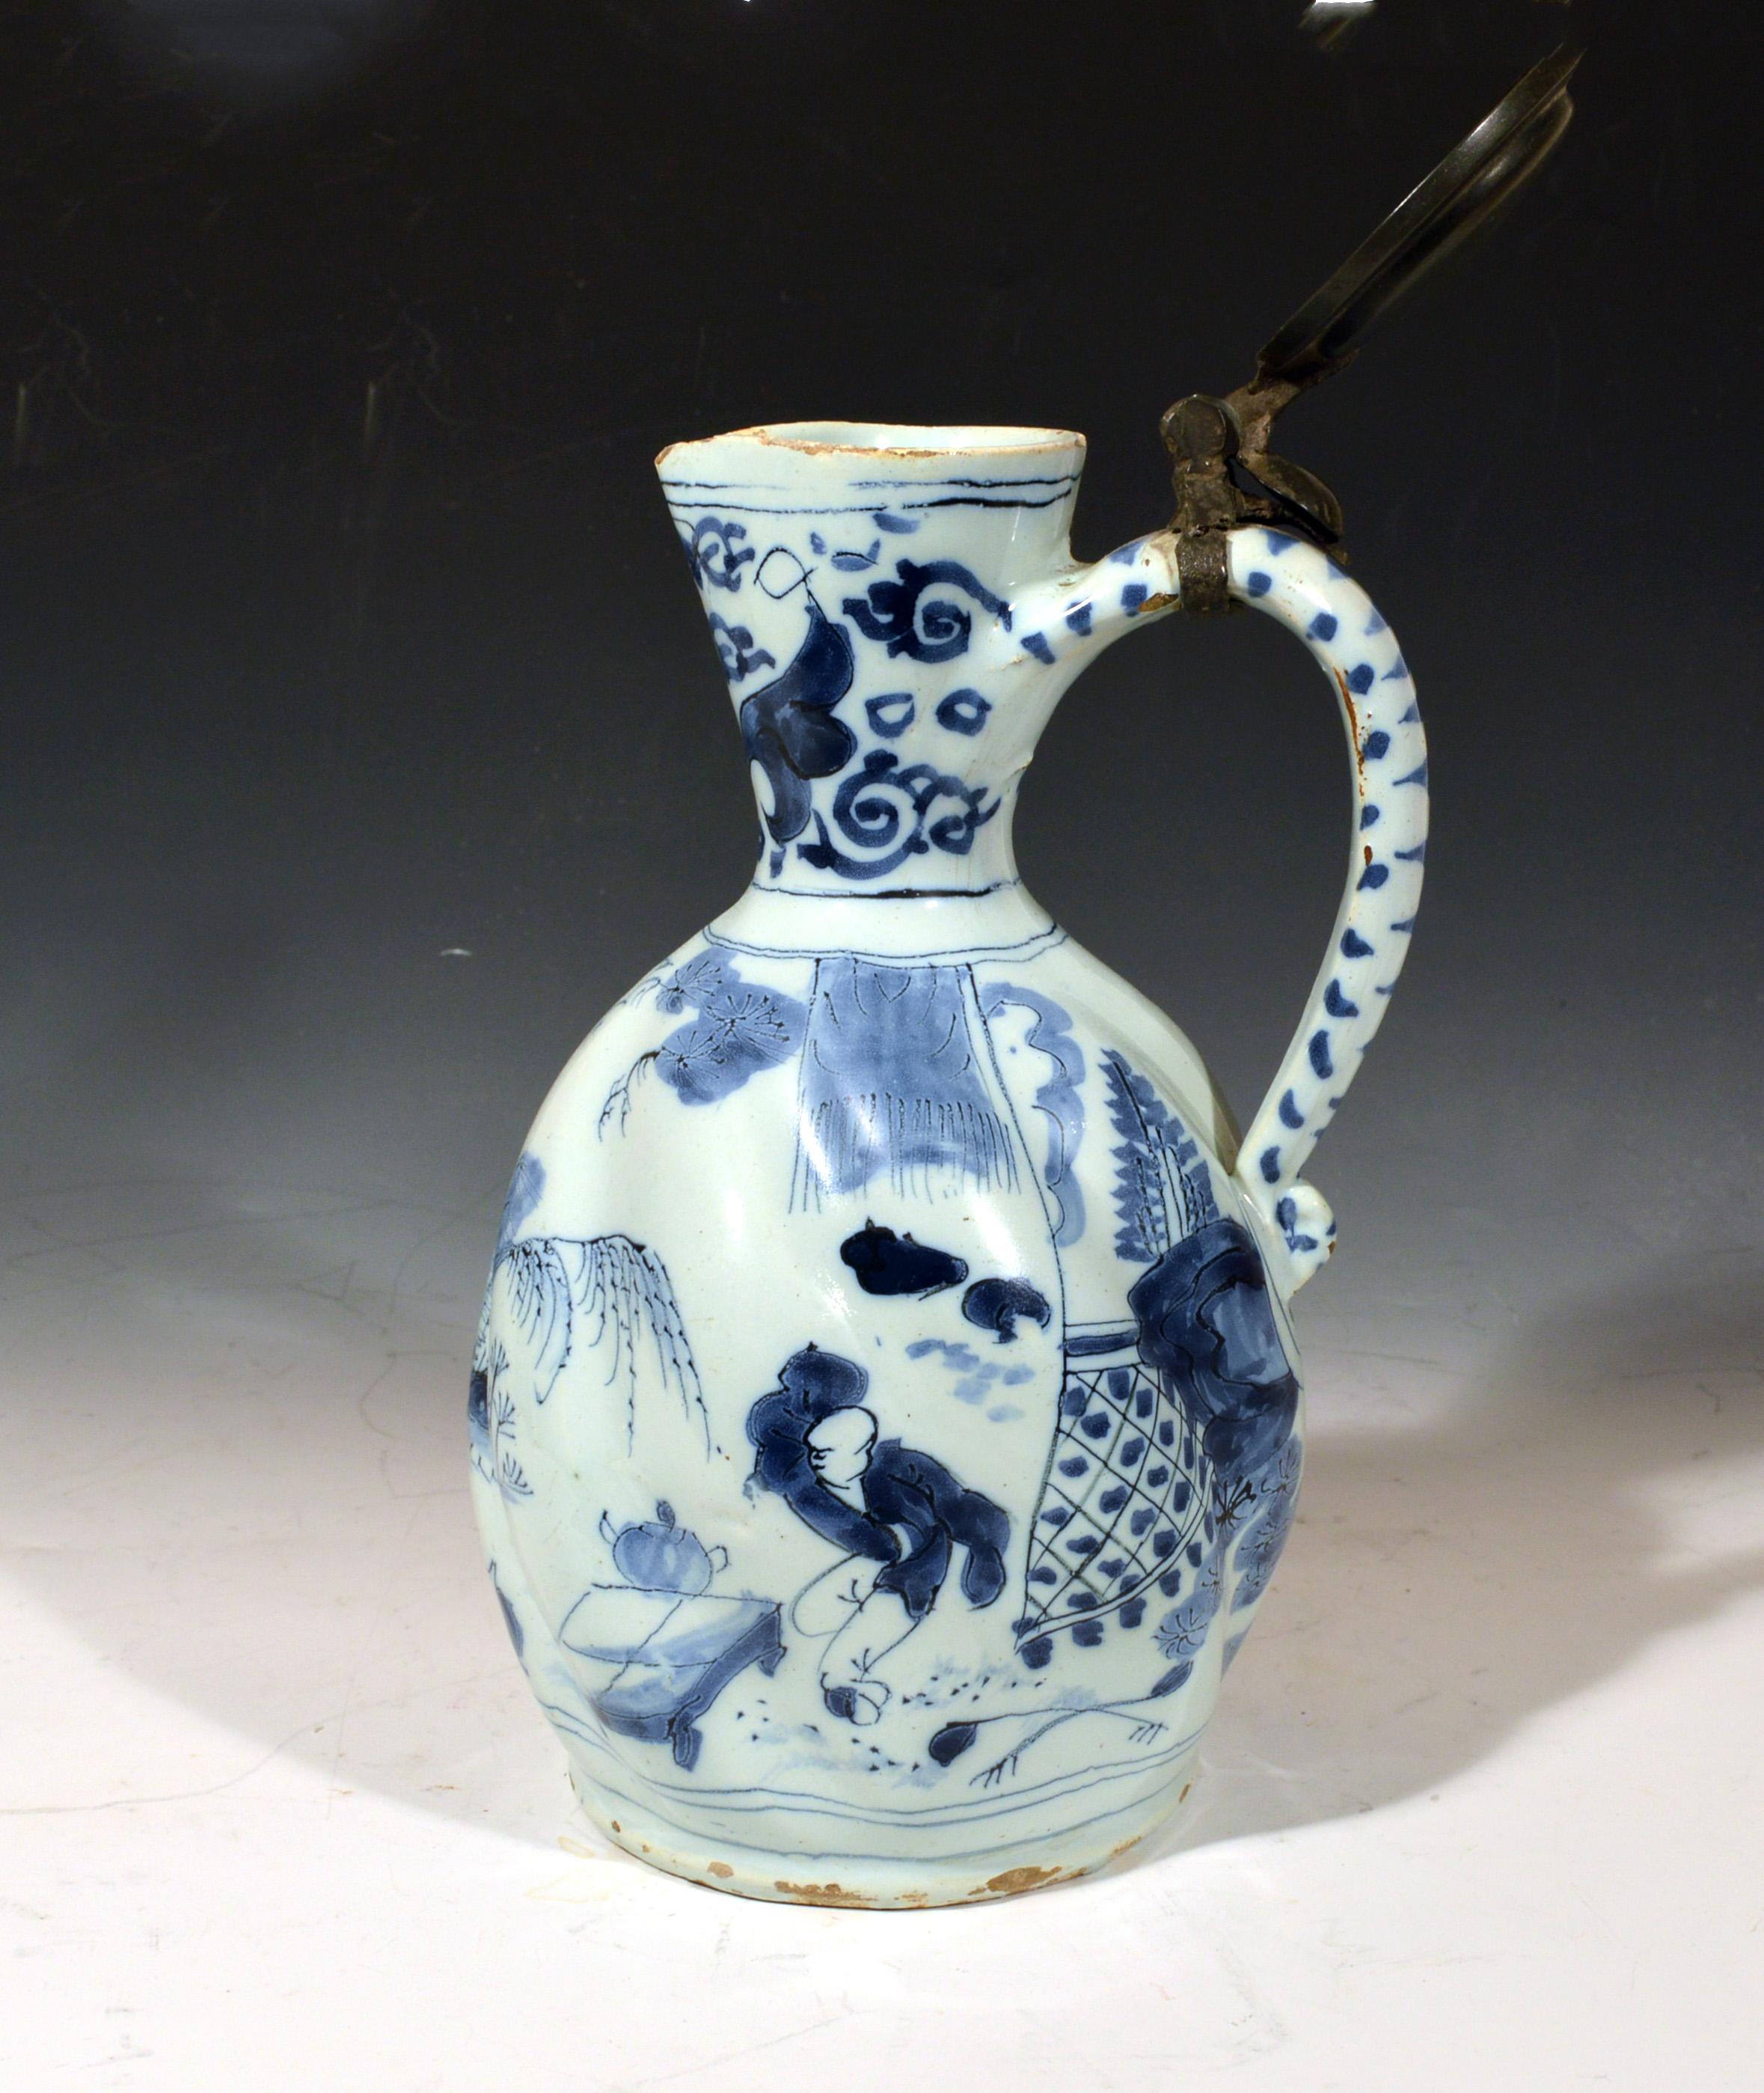 17th century delft pottery